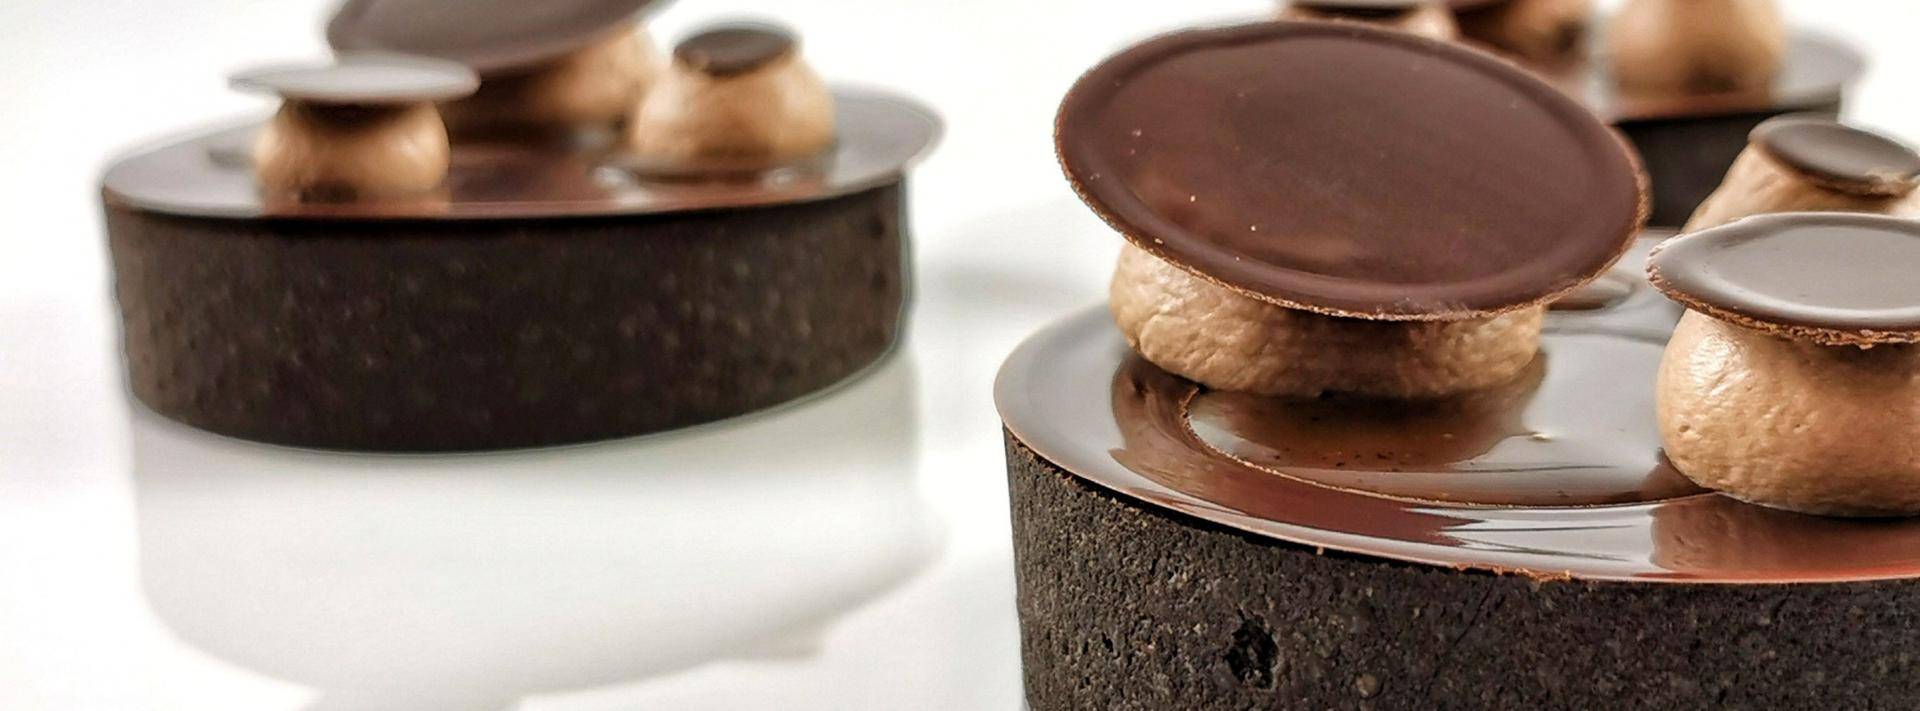 Receptury z czekoladą bez cukru Malchoc Callebaut